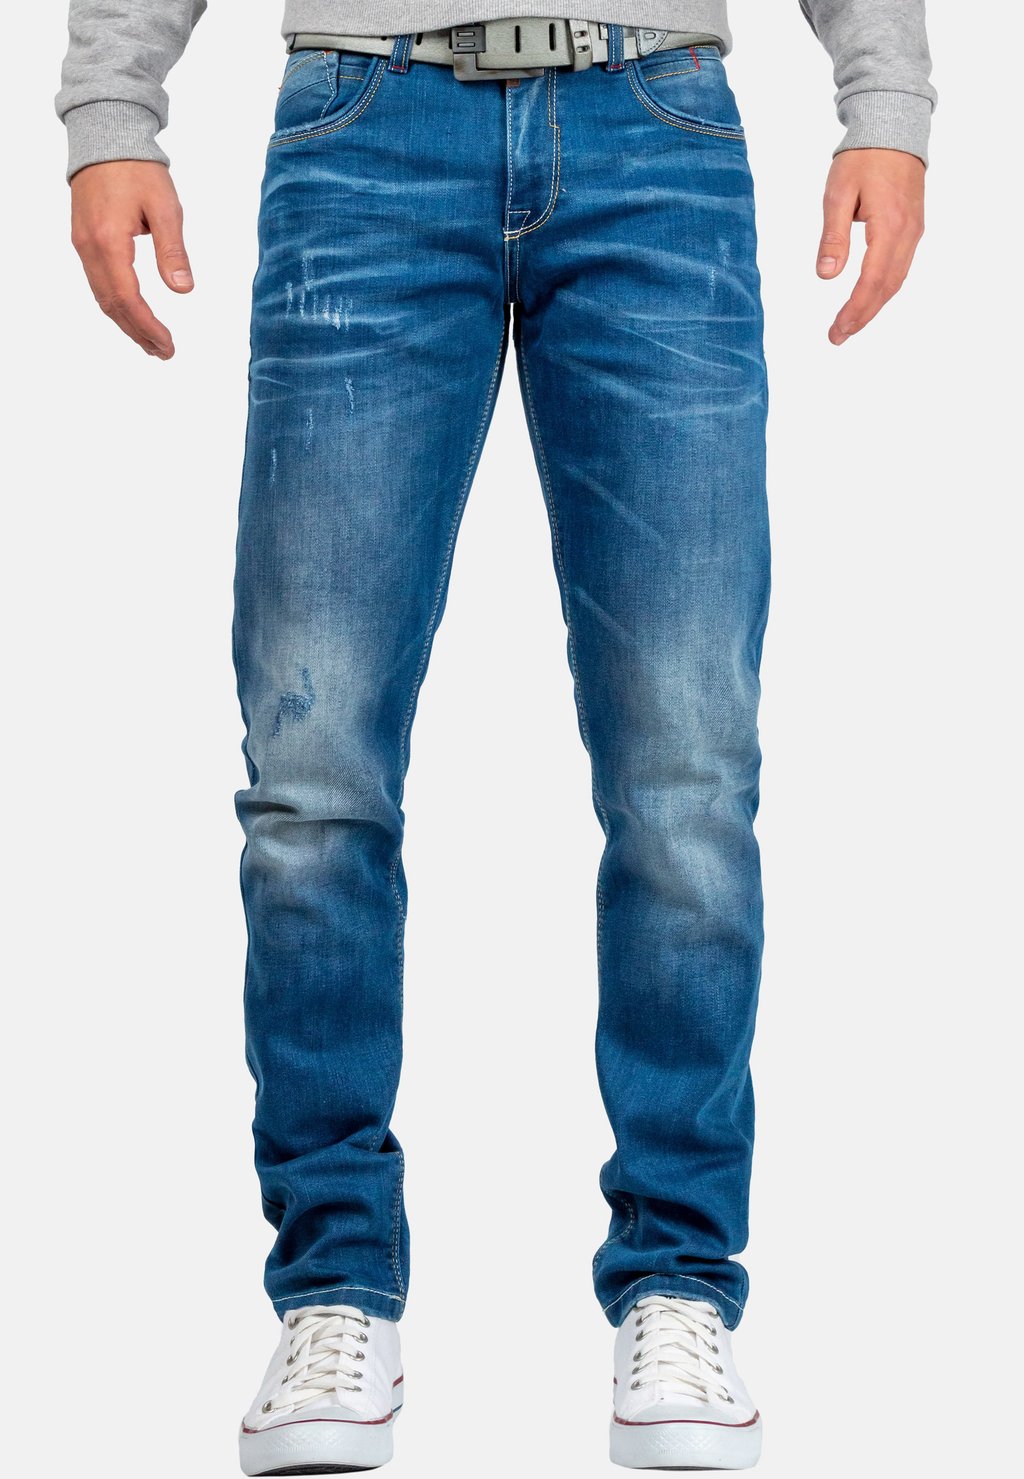 Джинсы приталенного кроя Cipo & Baxx, цвет blau джинсы приталенного кроя cipo